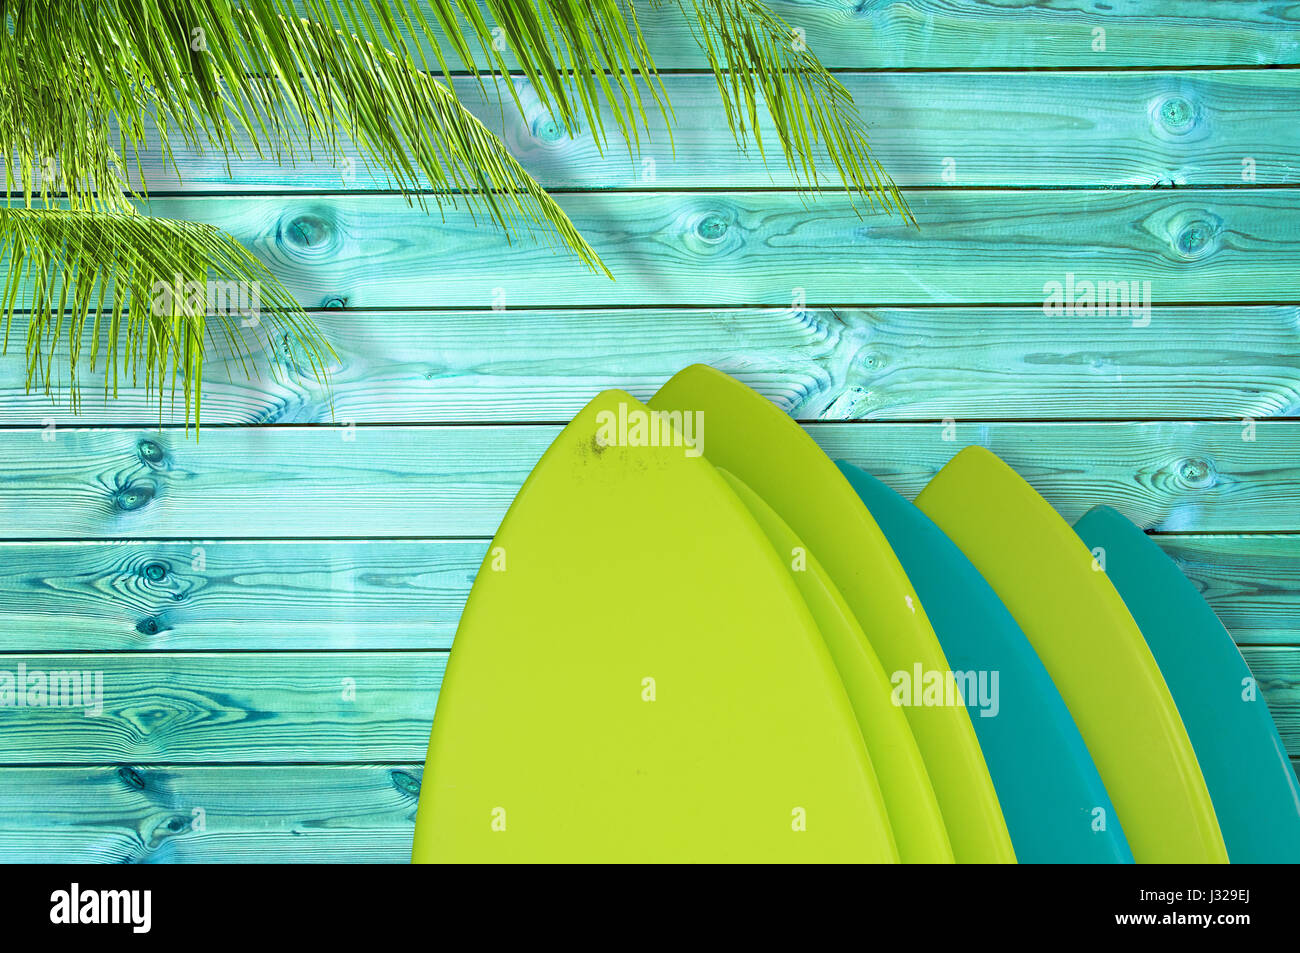 Pile de planches en couleurs sur un fond bleu de planches en bois tropical avec palmier Banque D'Images